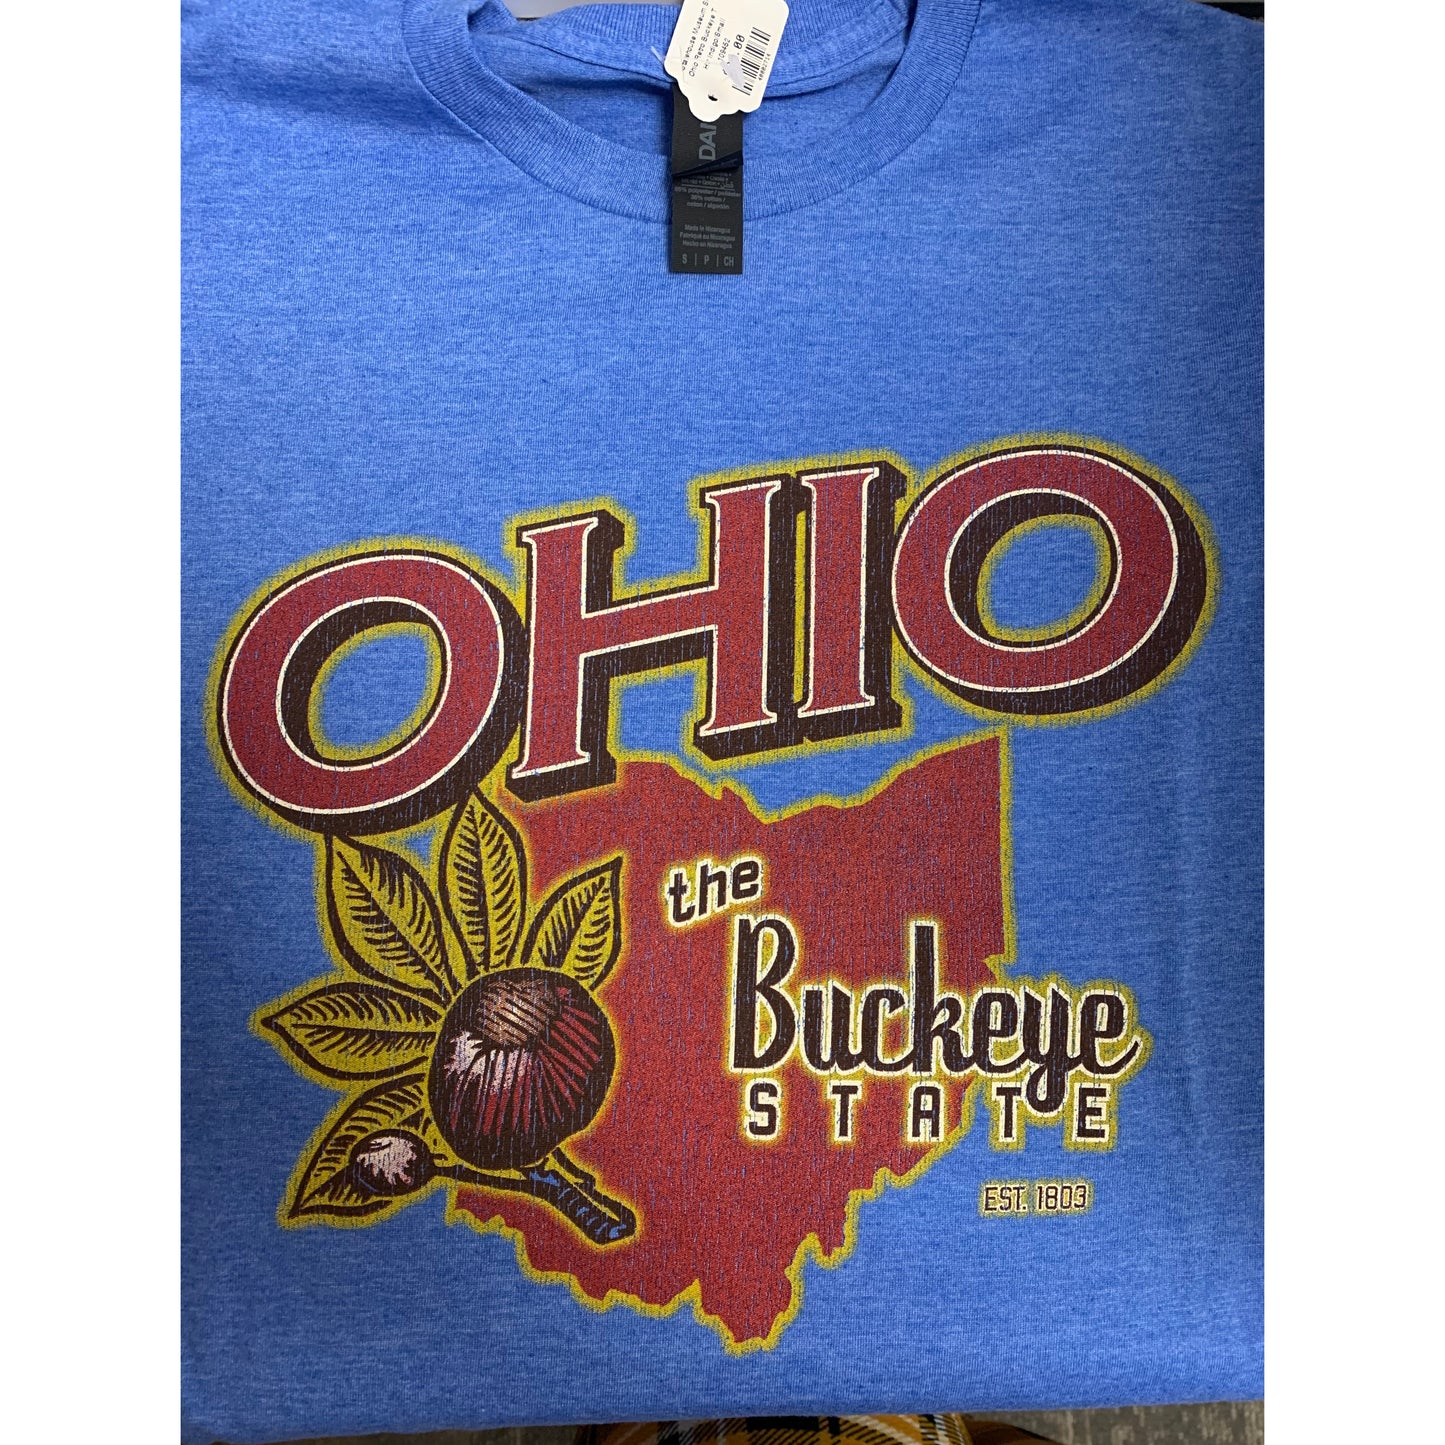 Buckeye State T-shirt